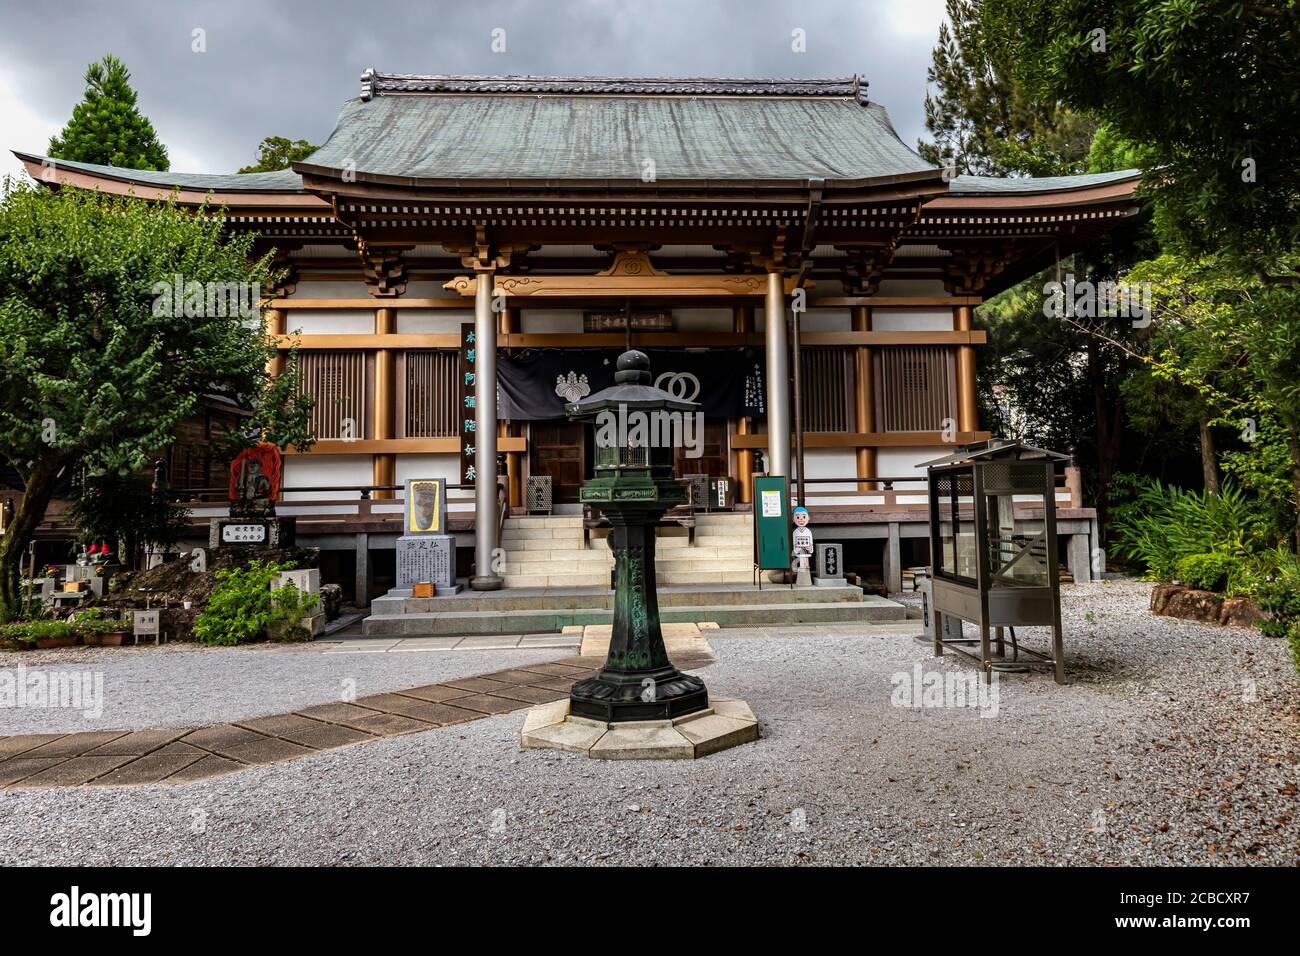 Zenrakuji ist der 30. Tempel auf der Shikoku Pilgerfahrt und liegt direkt neben dem Tosa Schrein, einem Ort, mit dem er historisch verbunden ist. Der aktuelle Zen Stockfoto